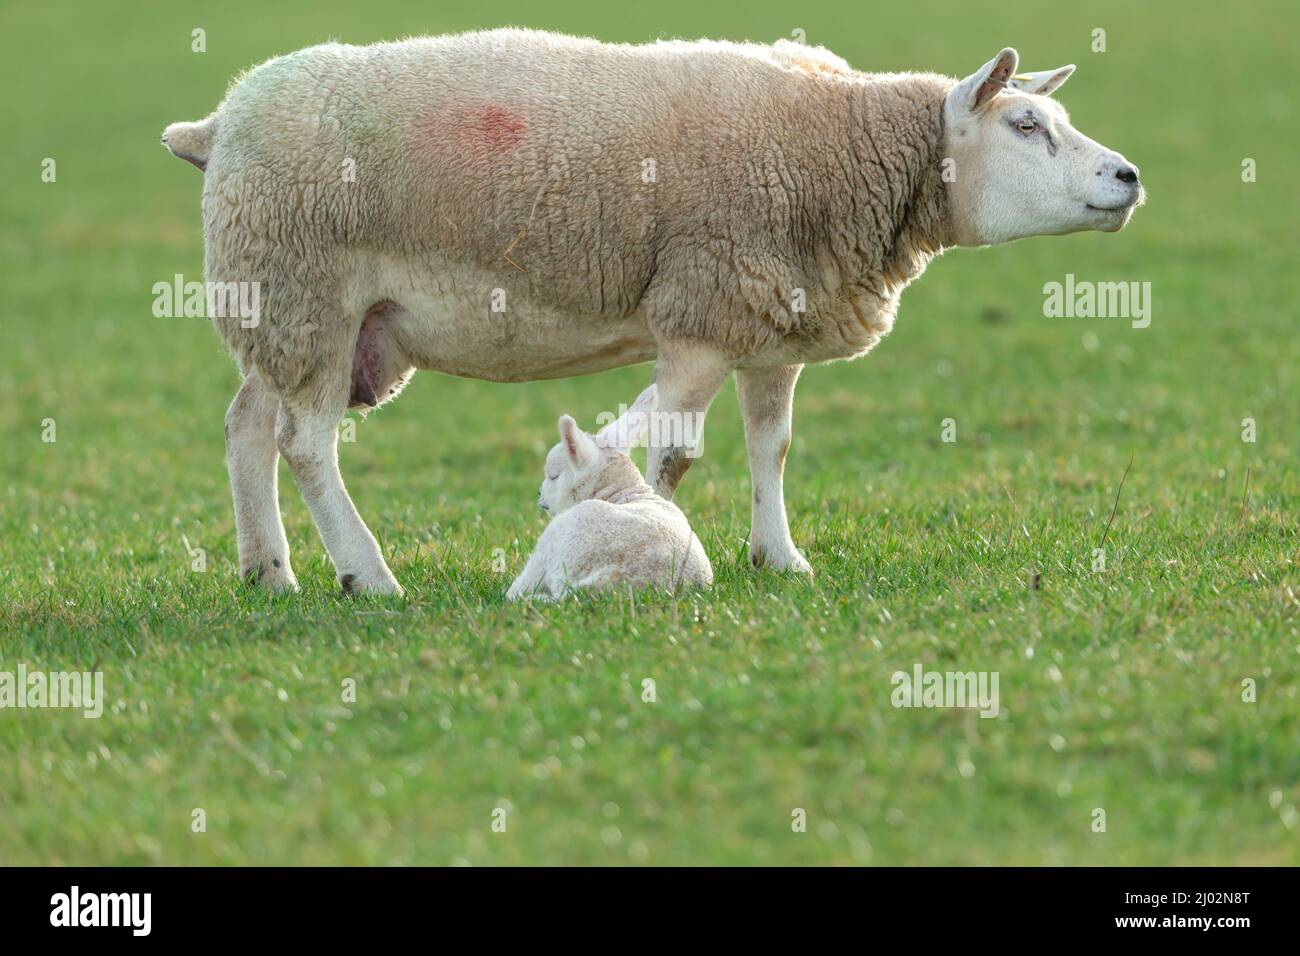 Gros plan d'une belle brebis Texel ou d'une femelle avec son agneau nouveau-né en sommeil au début du printemps. Fond vert propre. Copier l'espace. Horizontale. Banque D'Images